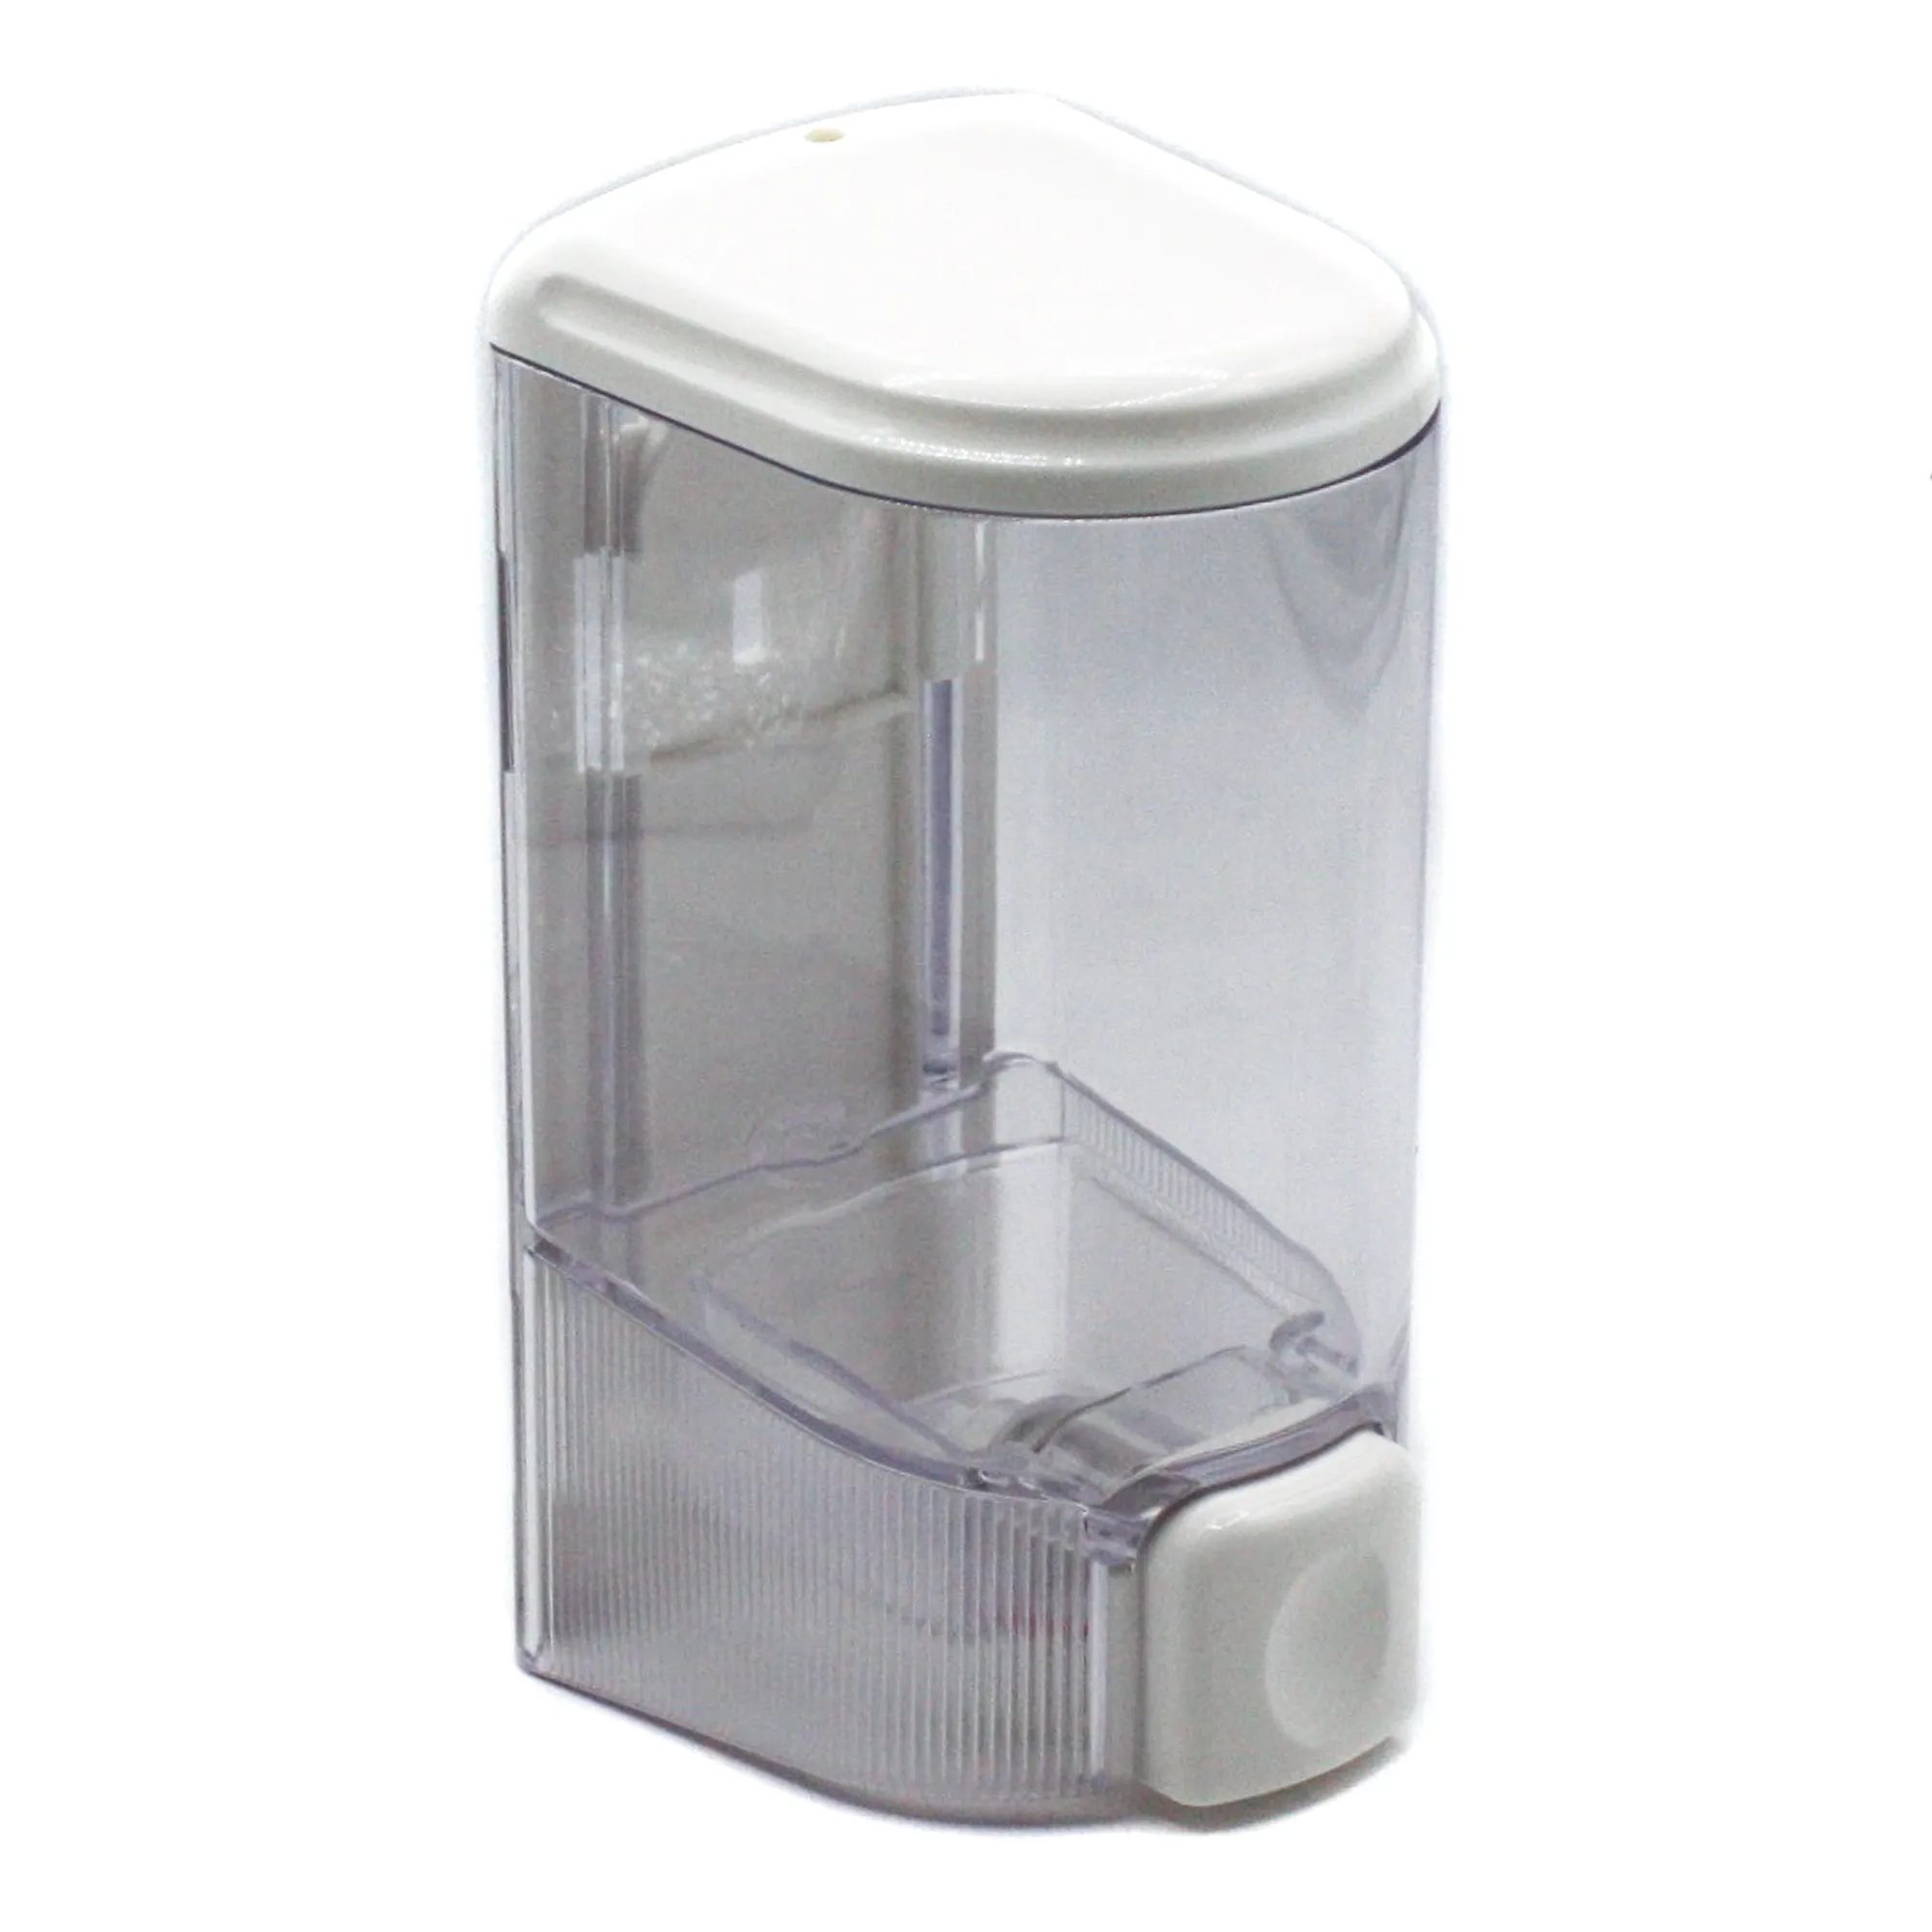 Диспенсер для жидкого мыла 500 мл пластиковый белый (артикул производителя S-015)